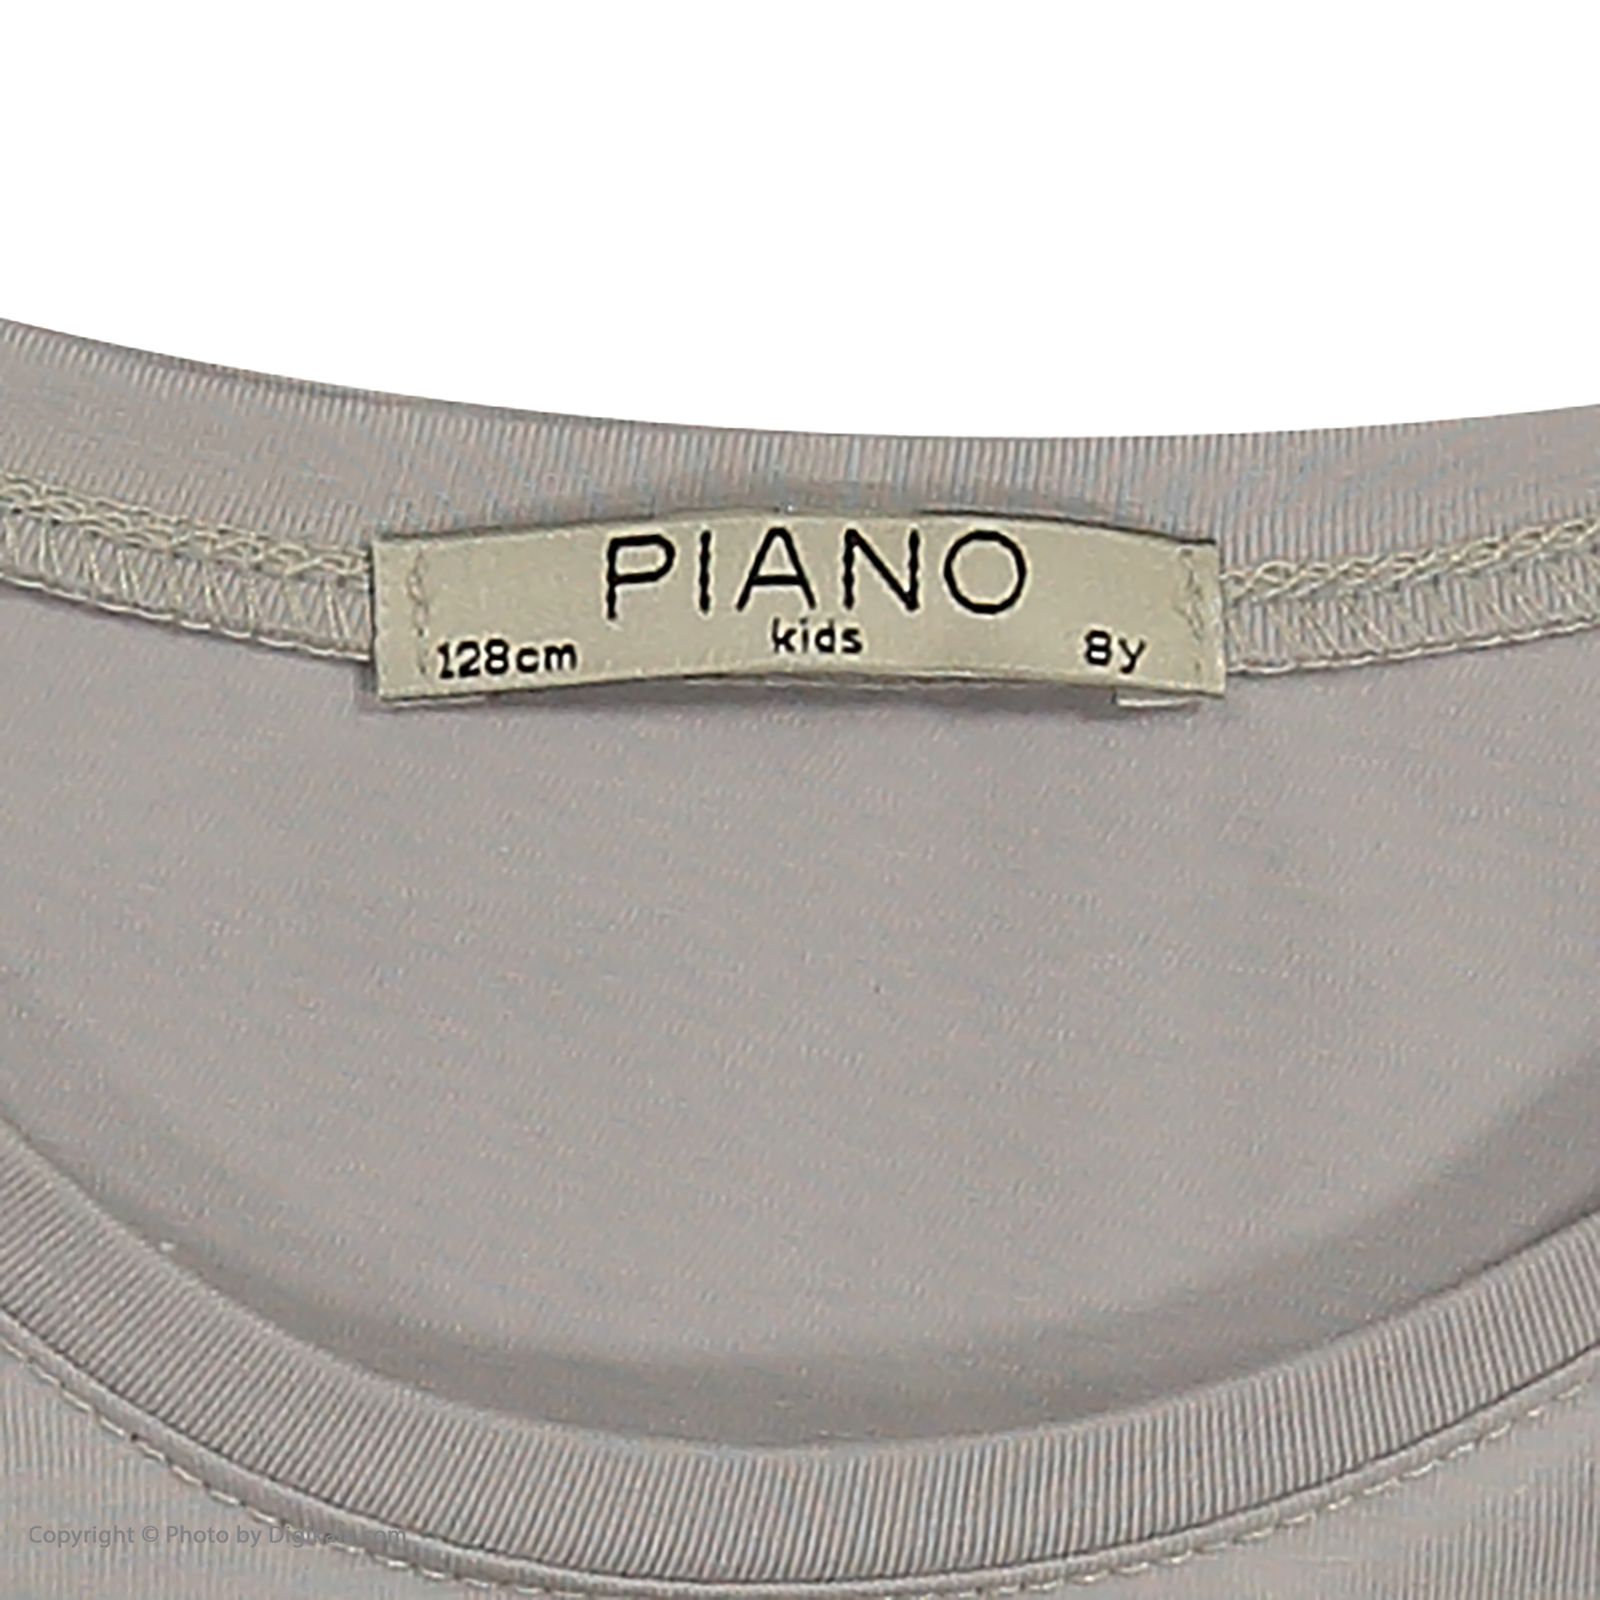 تی شرت دخترانه پیانو مدل 1830-90 -  - 5